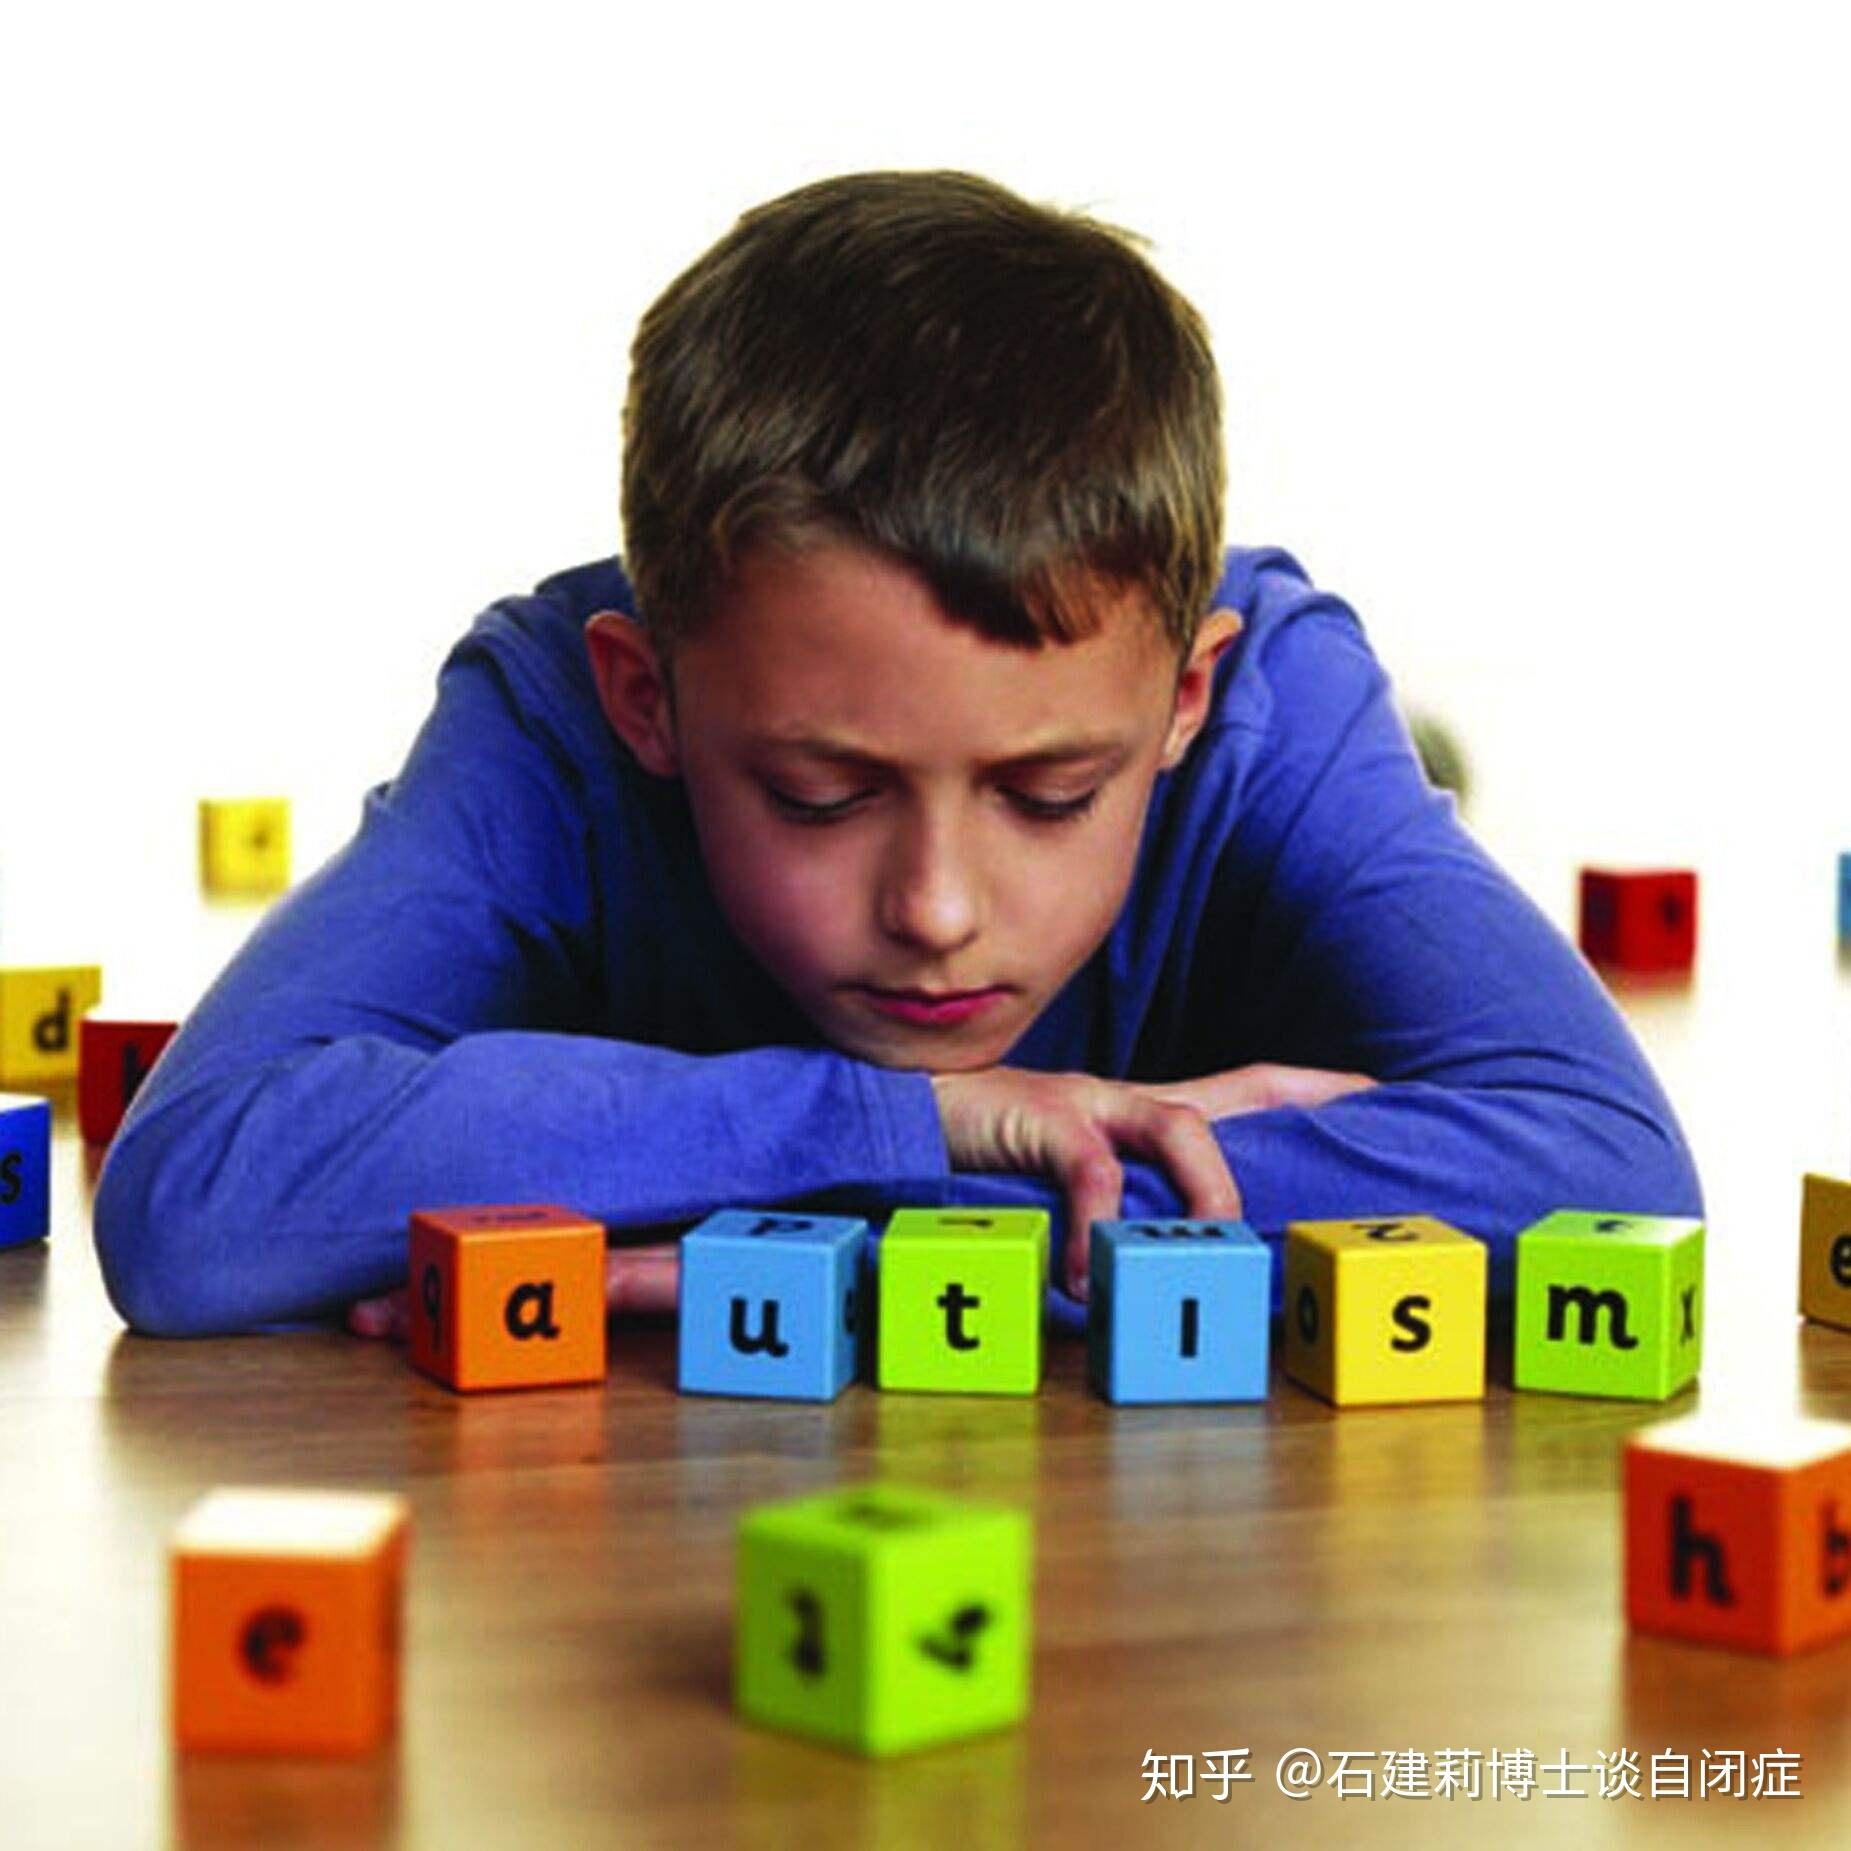 儿童自闭症的8项表现症状——北京天使儿童医院 - 哔哩哔哩